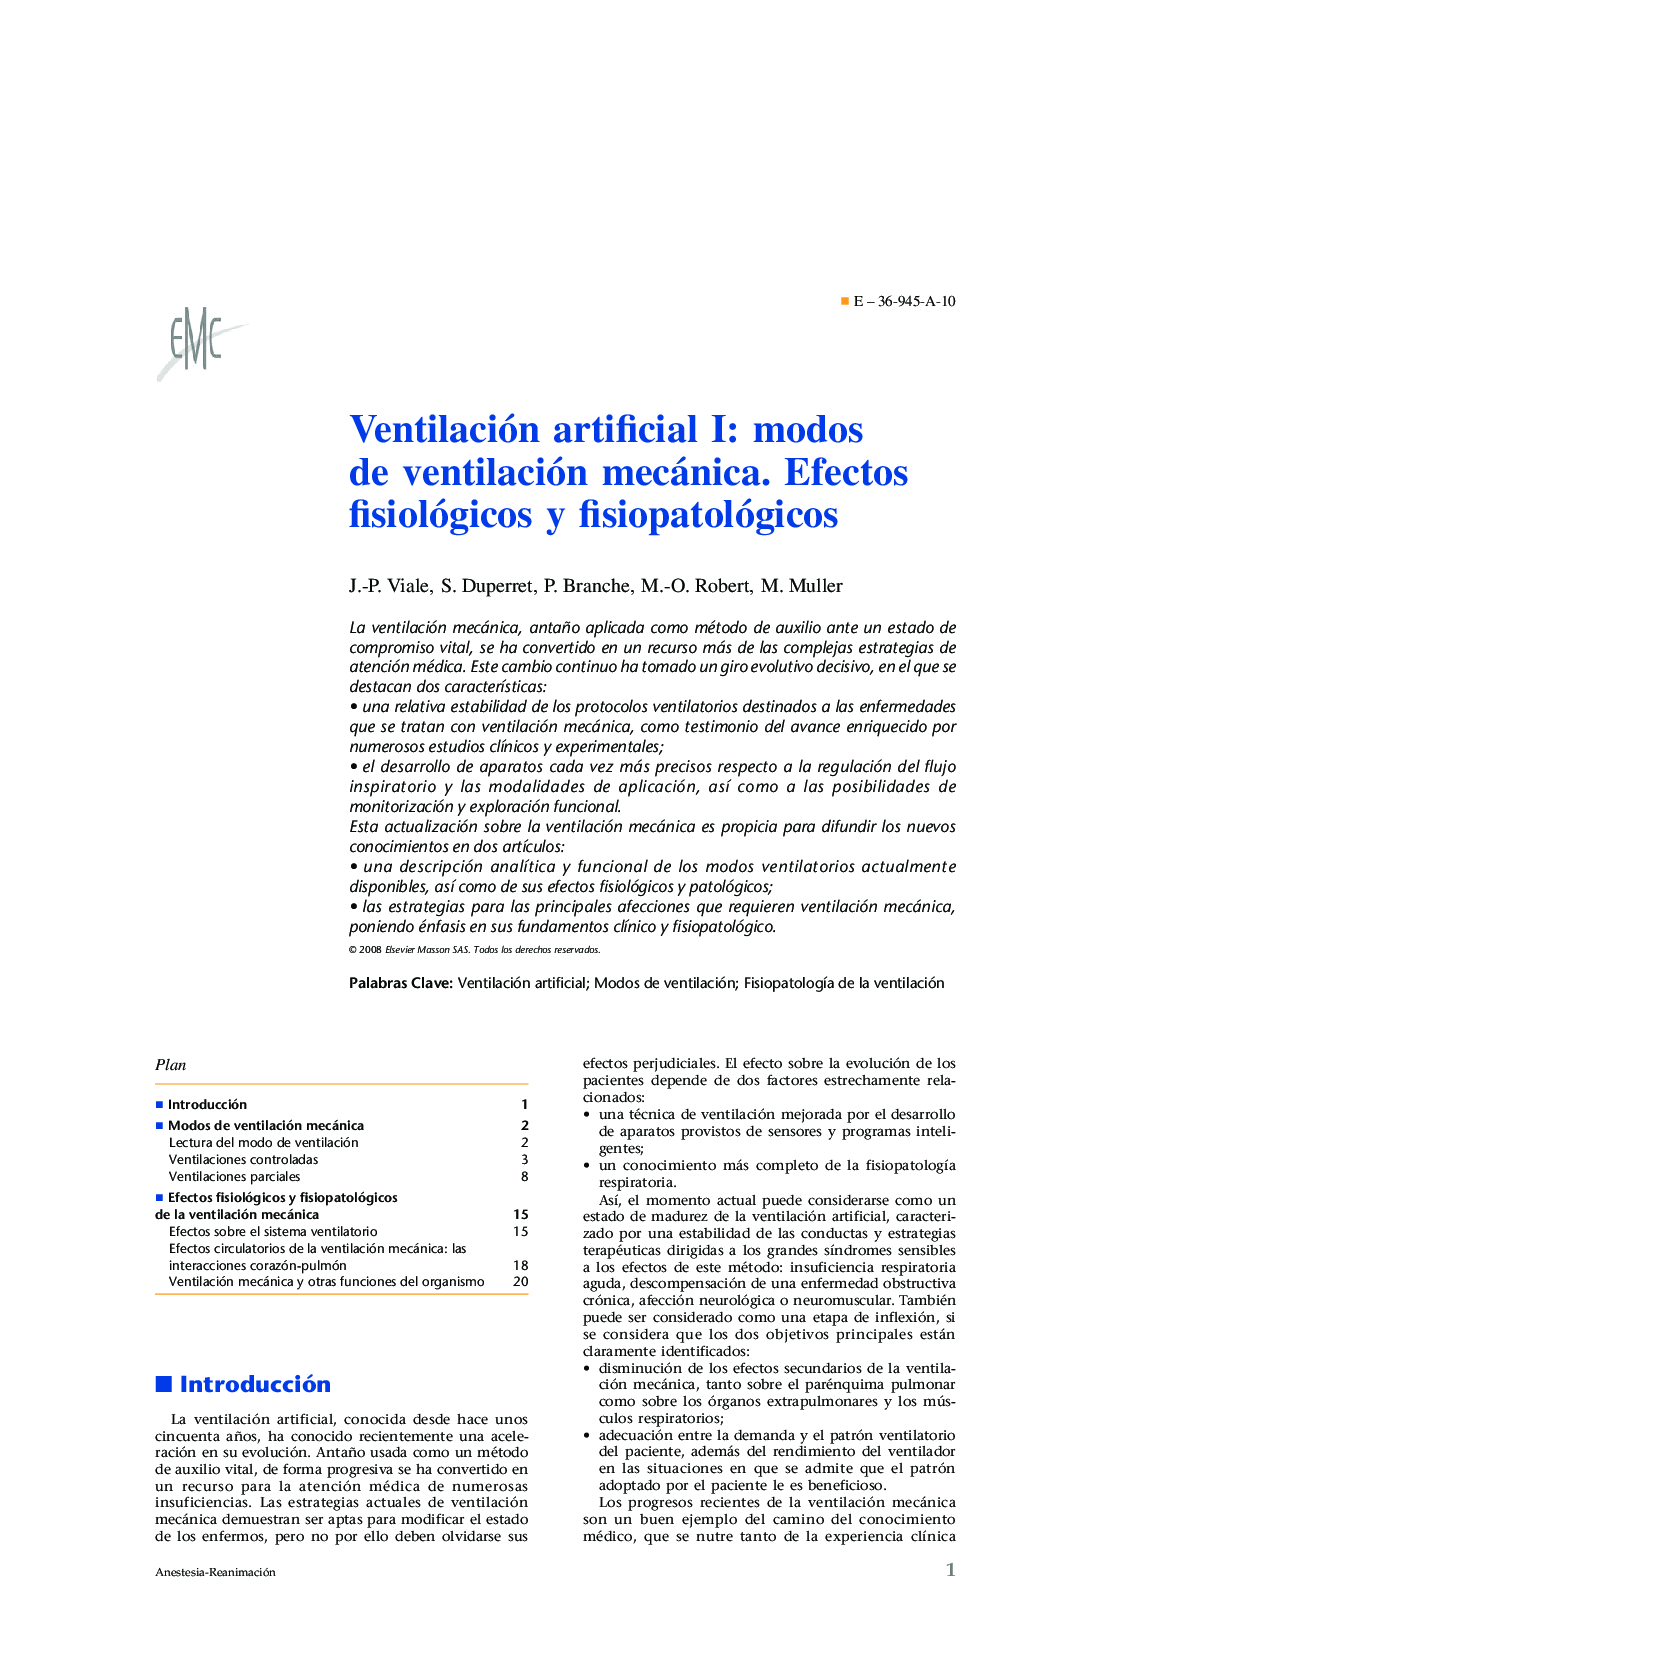 Ventilación artificial I: modos de ventilación mecánica. Efectos fisiológicos y fisiopatológicos